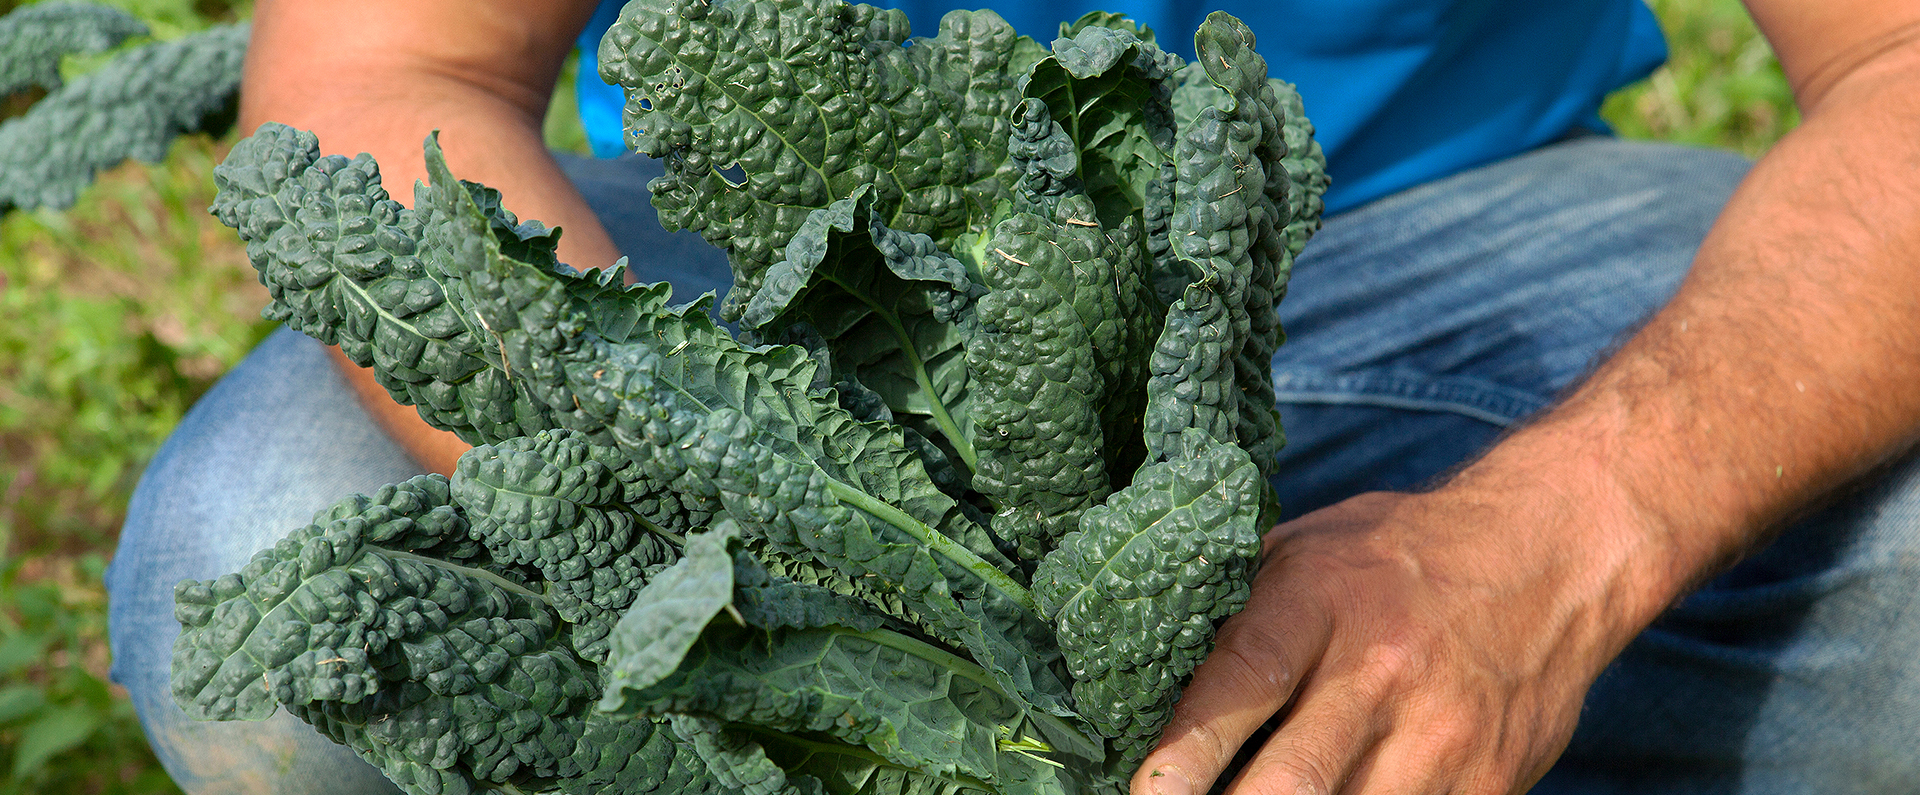 Hands holding freshly harvested kale. 